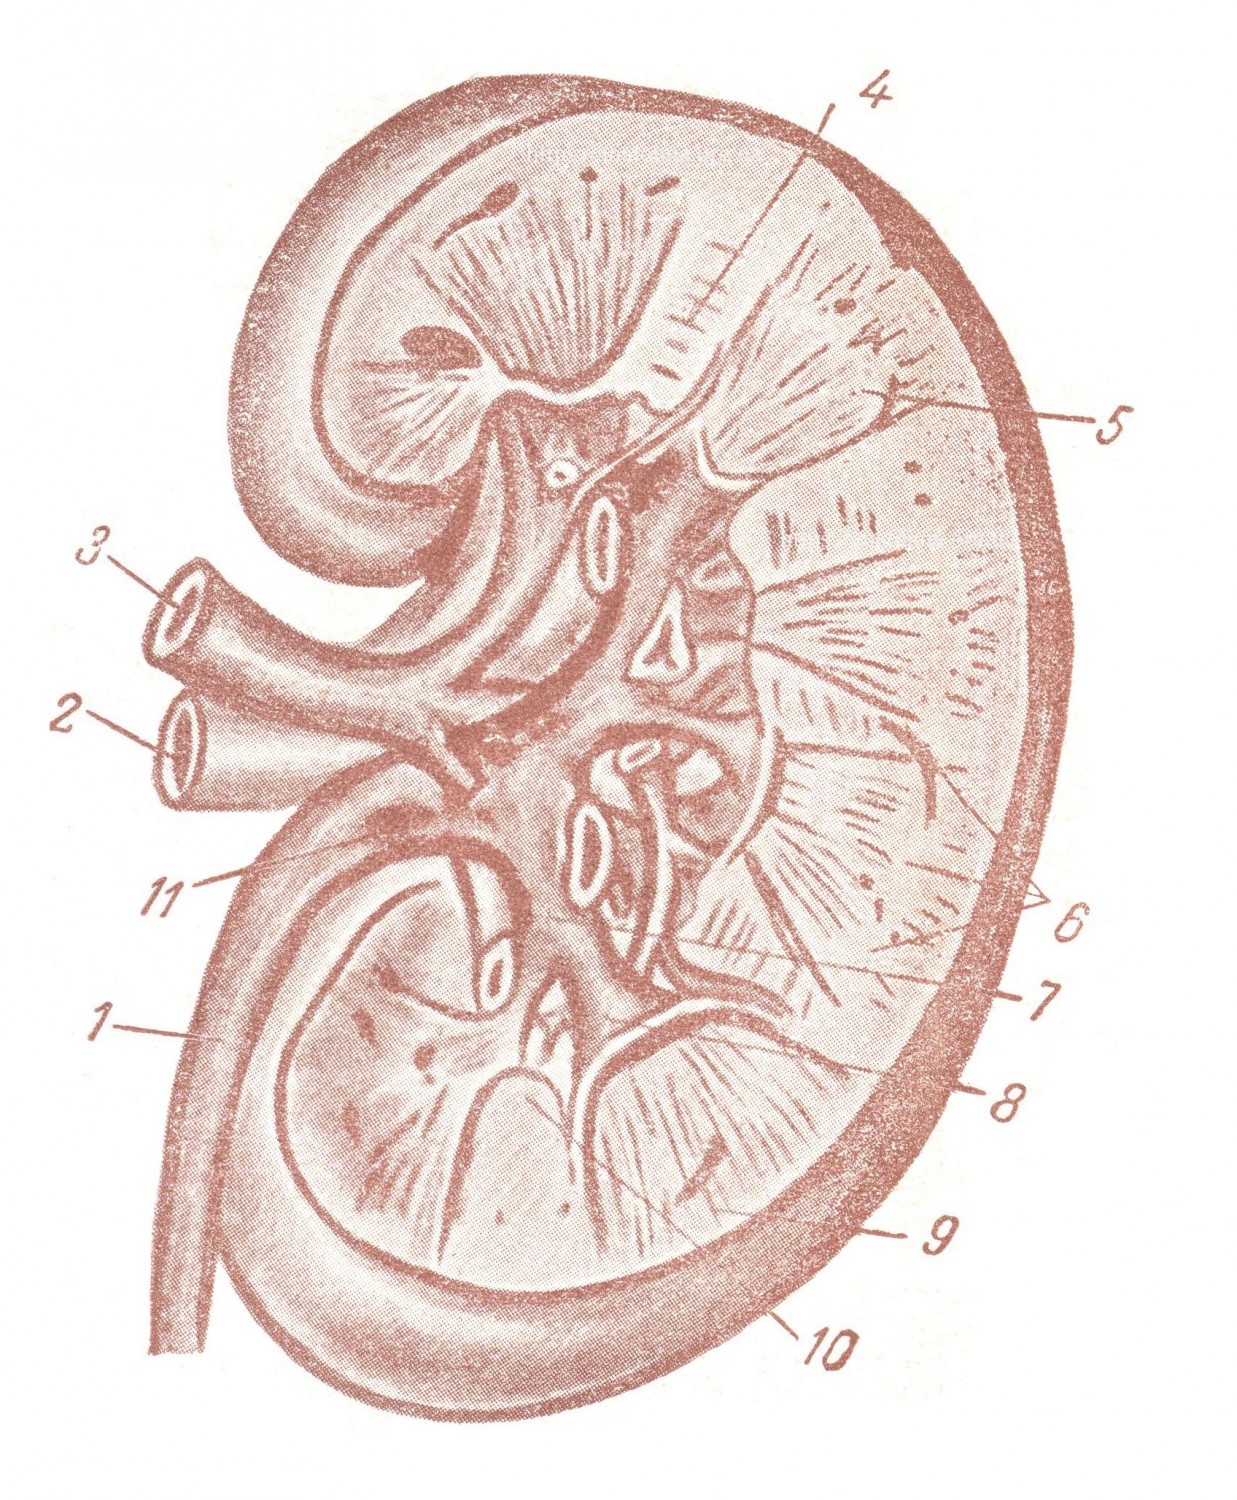 Венозная система почки, почка представлена в разрезе